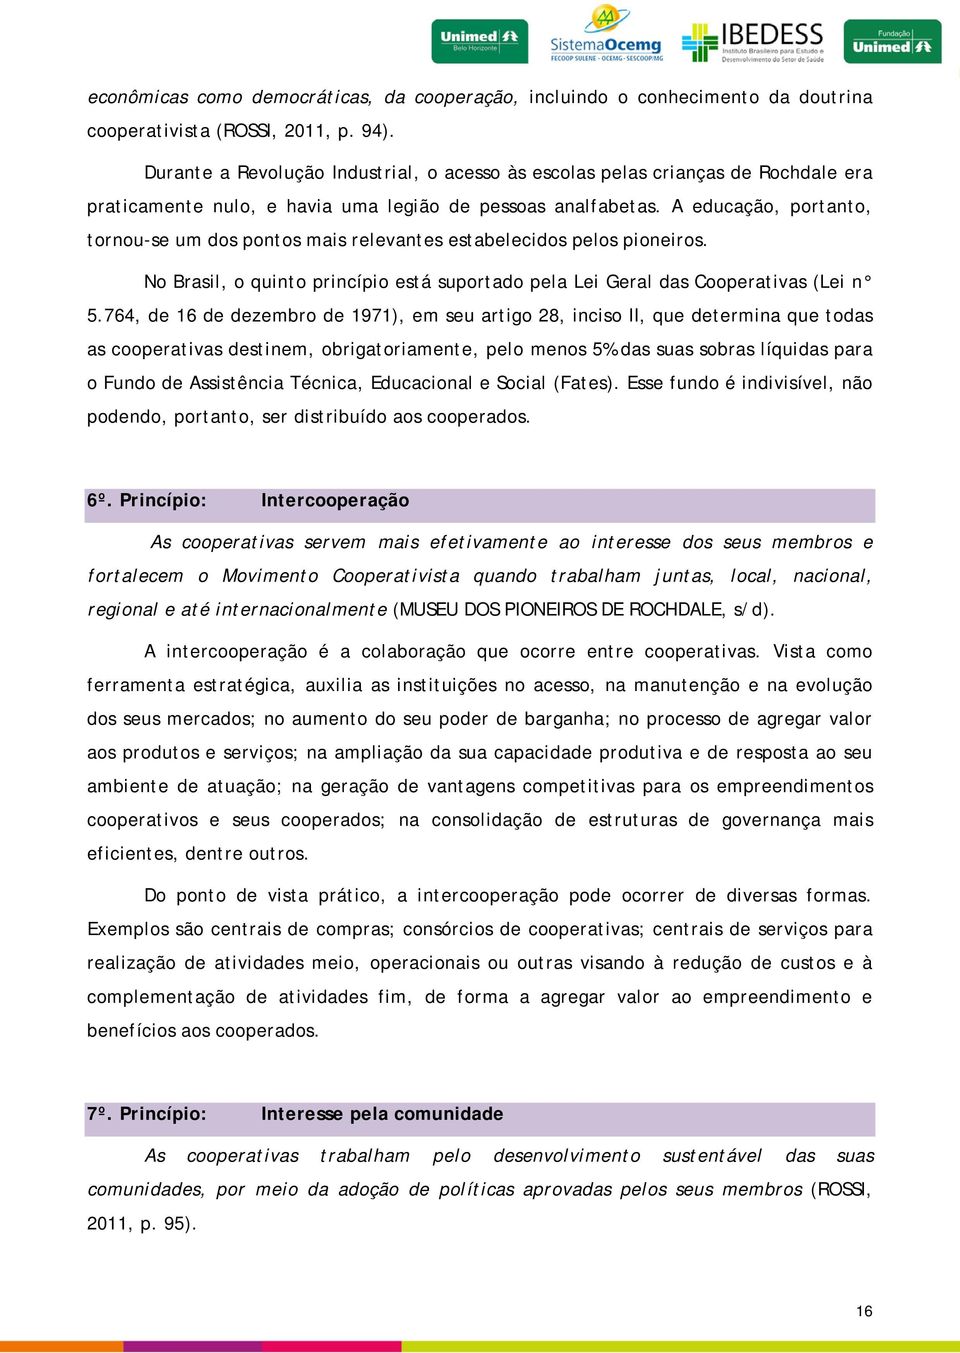 A educação, portanto, tornou-se um dos pontos mais relevantes estabelecidos pelos pioneiros. No Brasil, o quinto princípio está suportado pela Lei Geral das Cooperativas (Lei n 5.